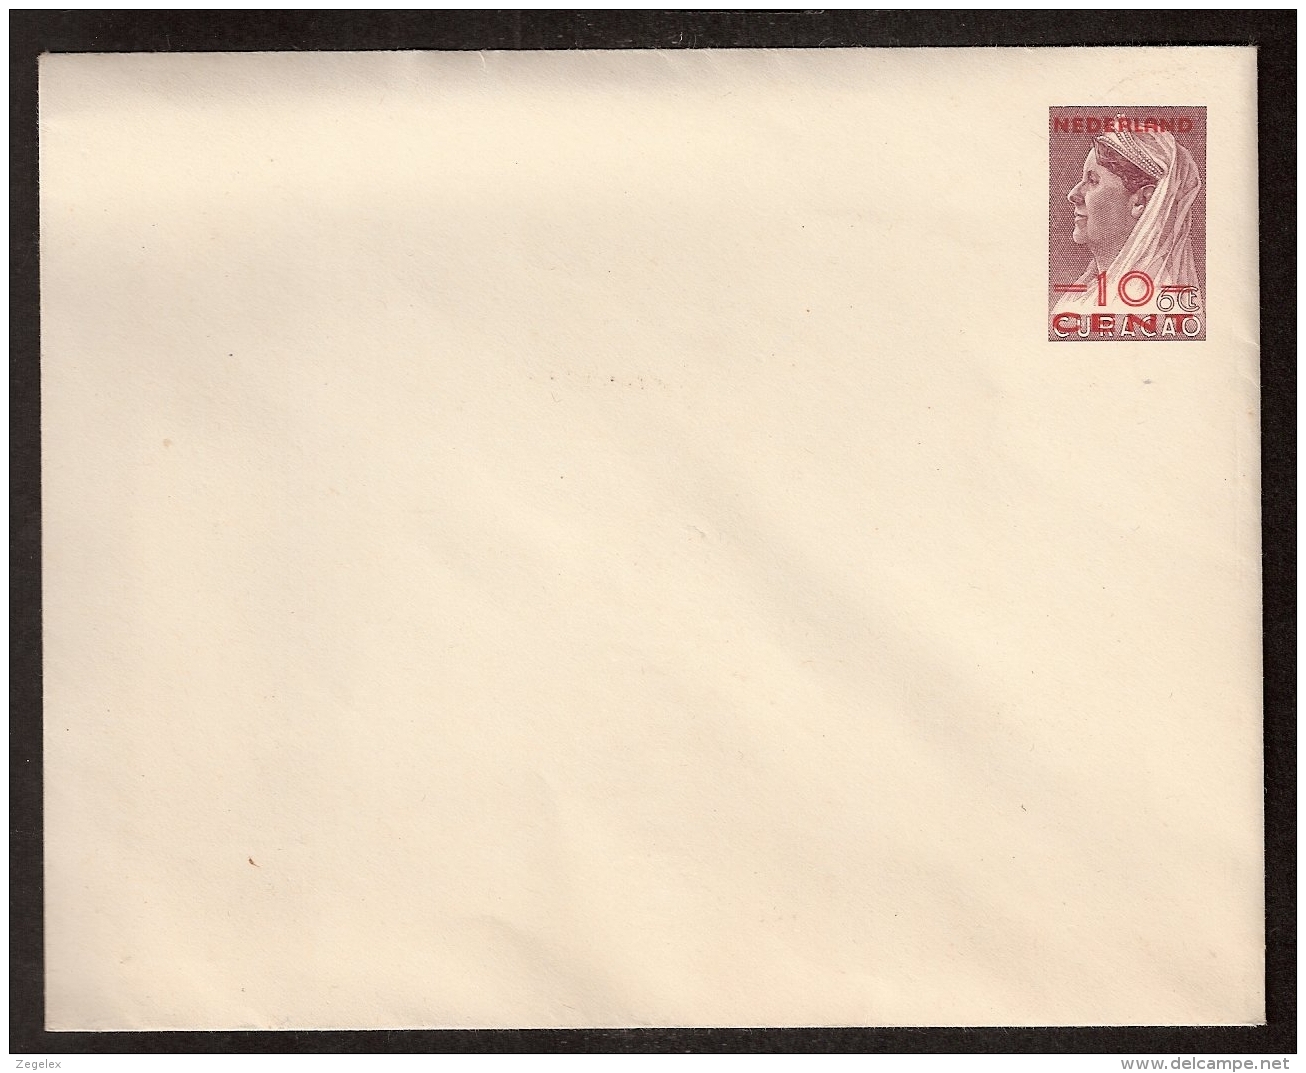 1950 - Envelop Van Curacao Met Rode Opdruk ""Nederland"" En Nieuwe Waarde -10cent- (Geuzendam Catalogus 6e Editie: Nr 31 - Postal Stationery